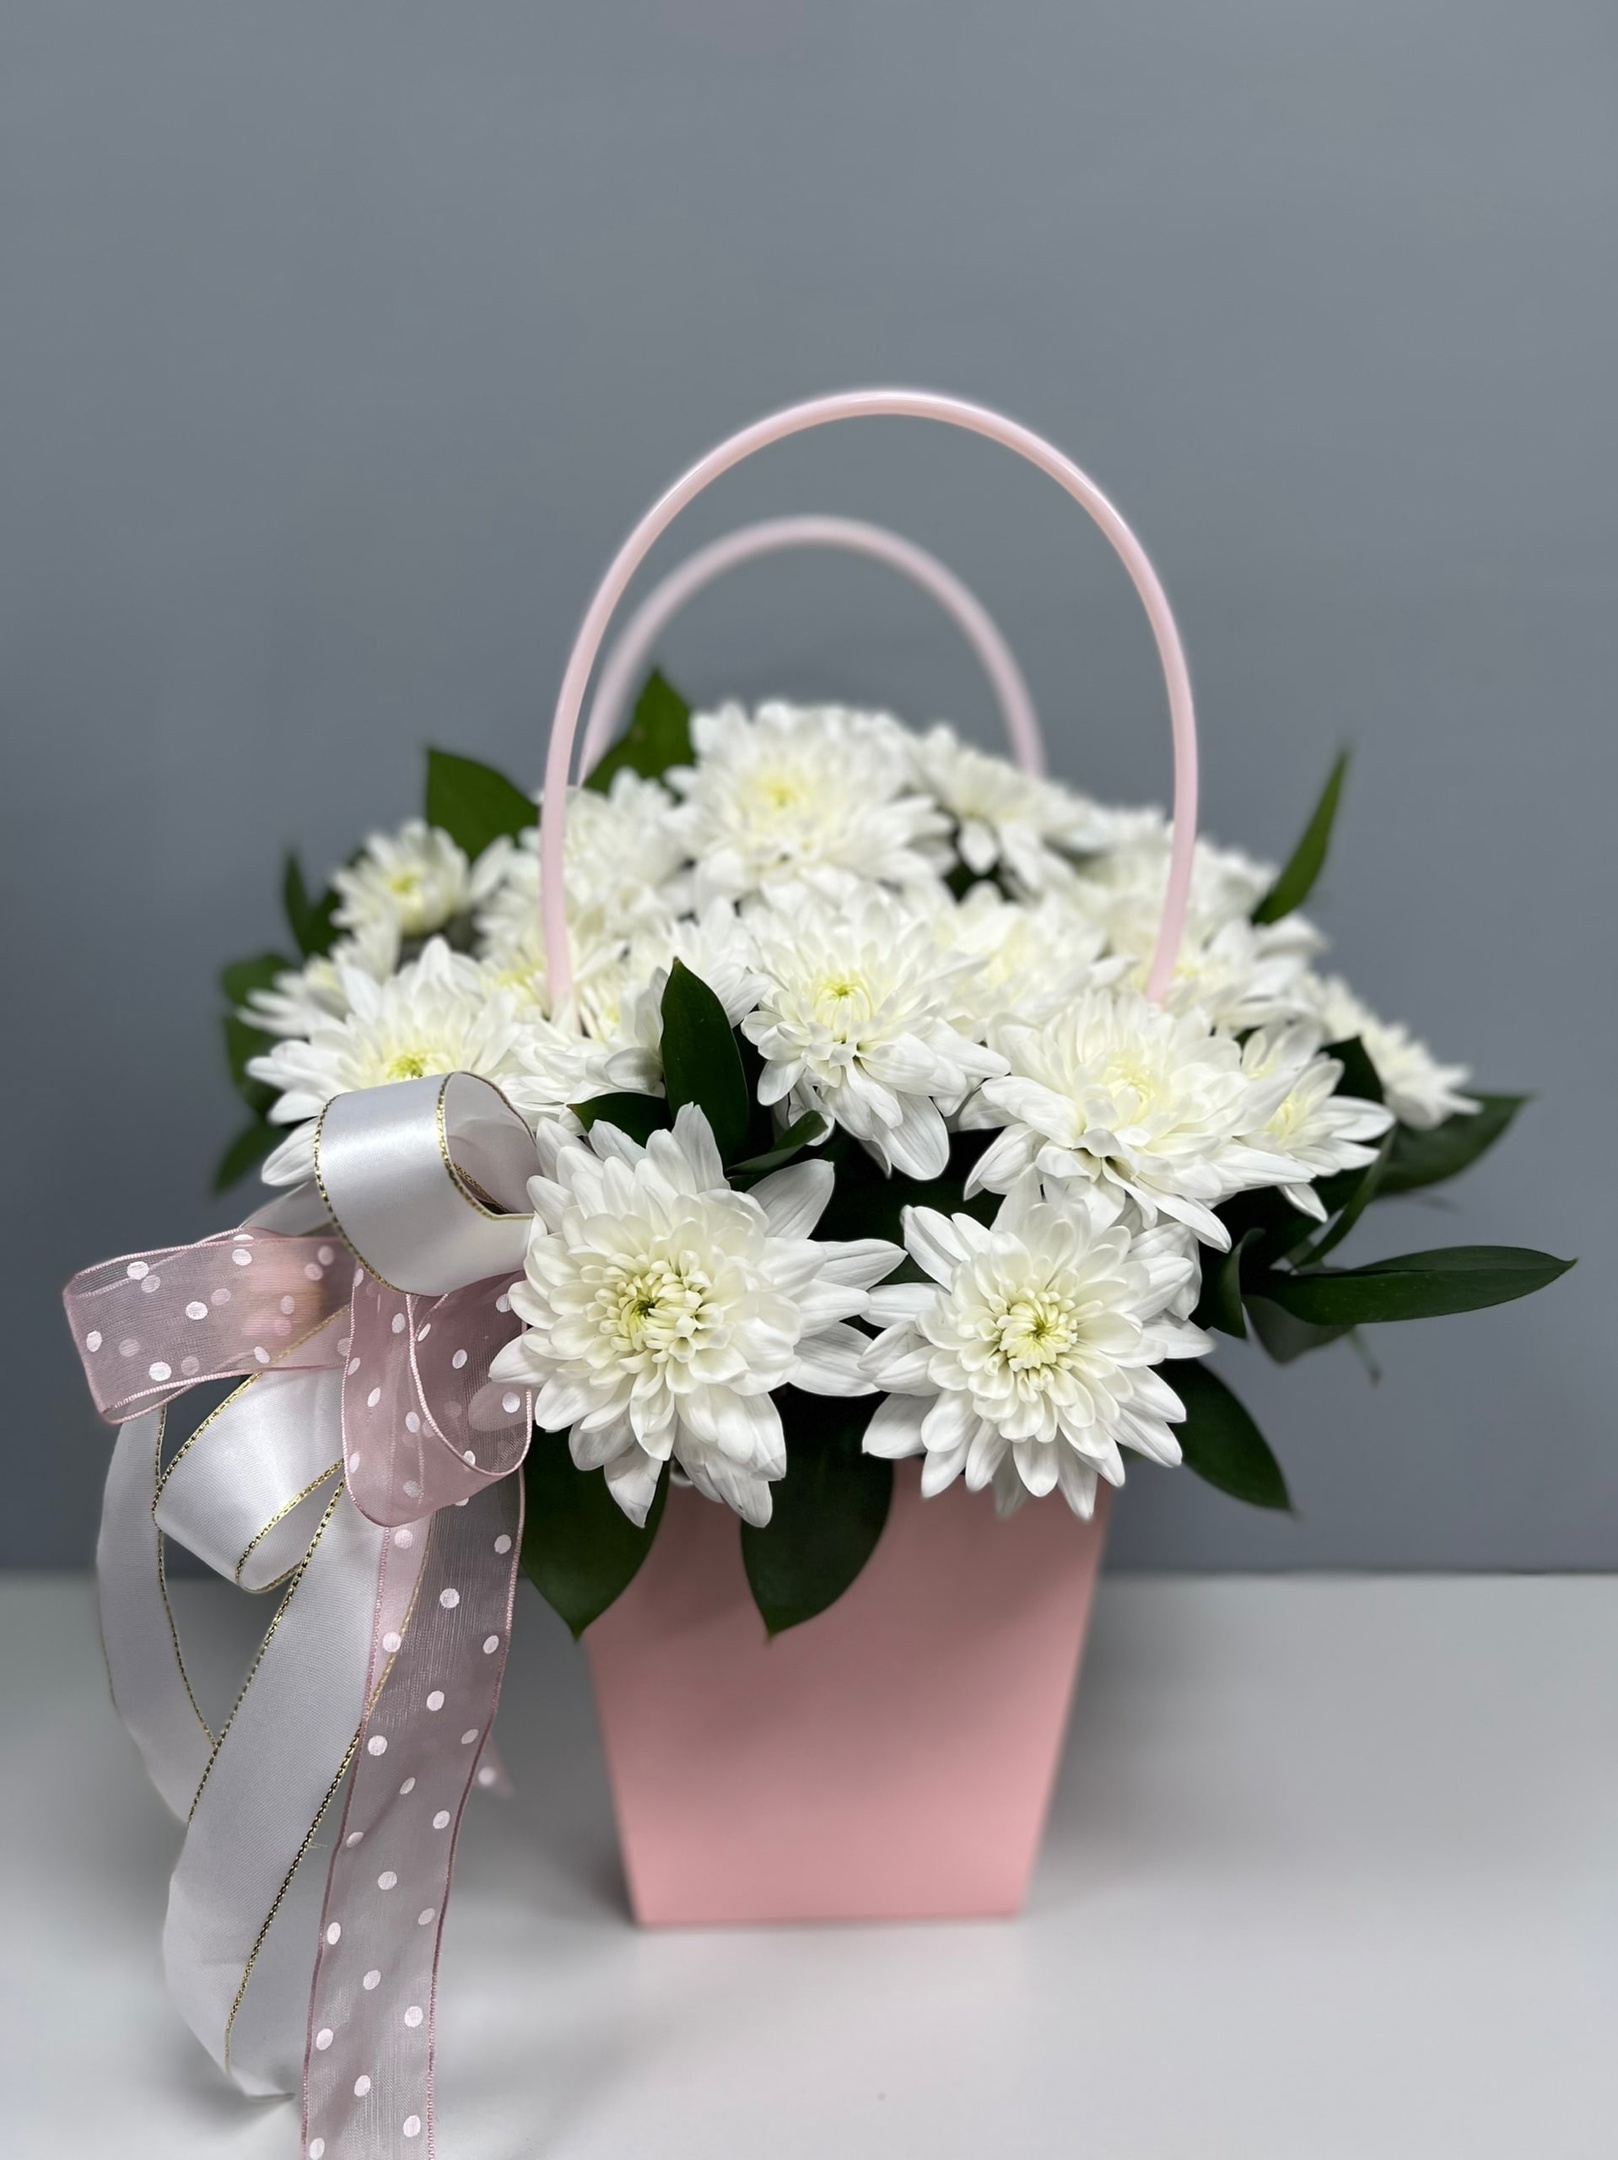 «Сумка с цветами 4» купить во Владимире - Магазин «Цветы Цена Одна»